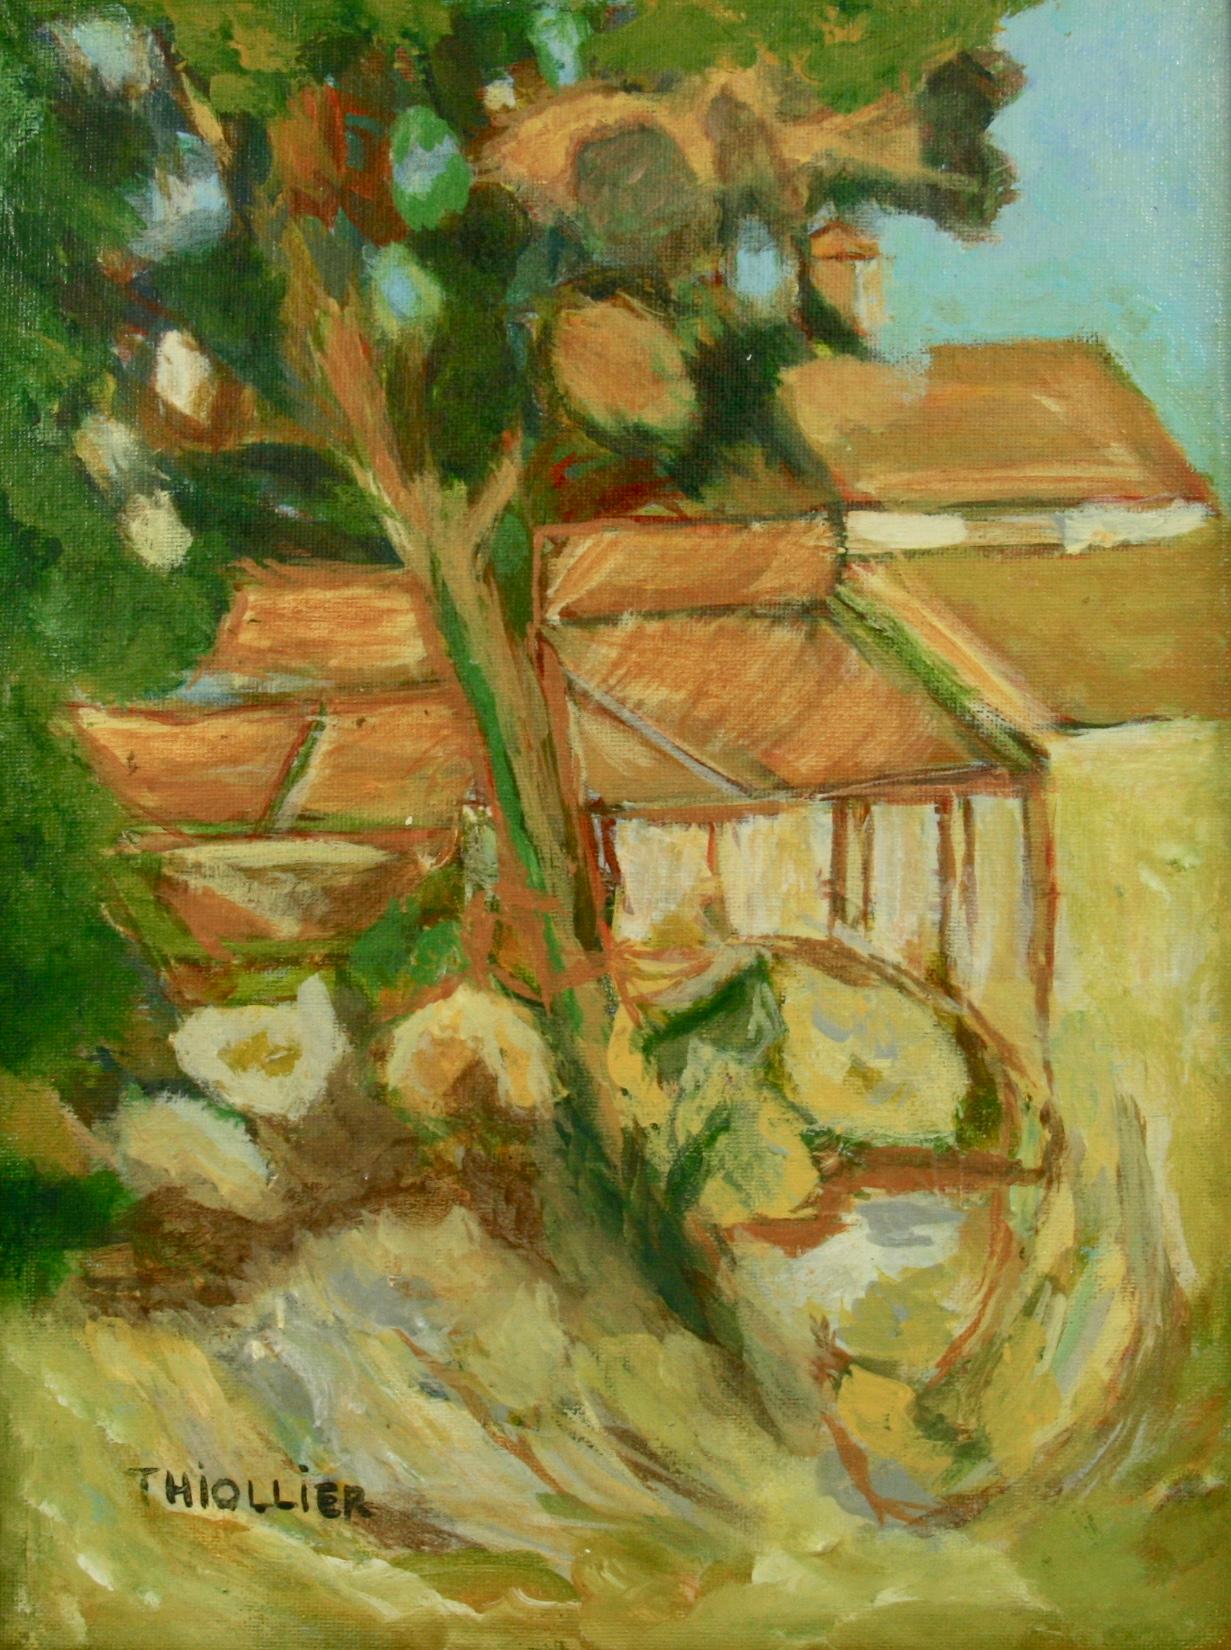 Peinture de paysage de village français impressionniste américaine vintage 1970 - Painting de Thiollier 